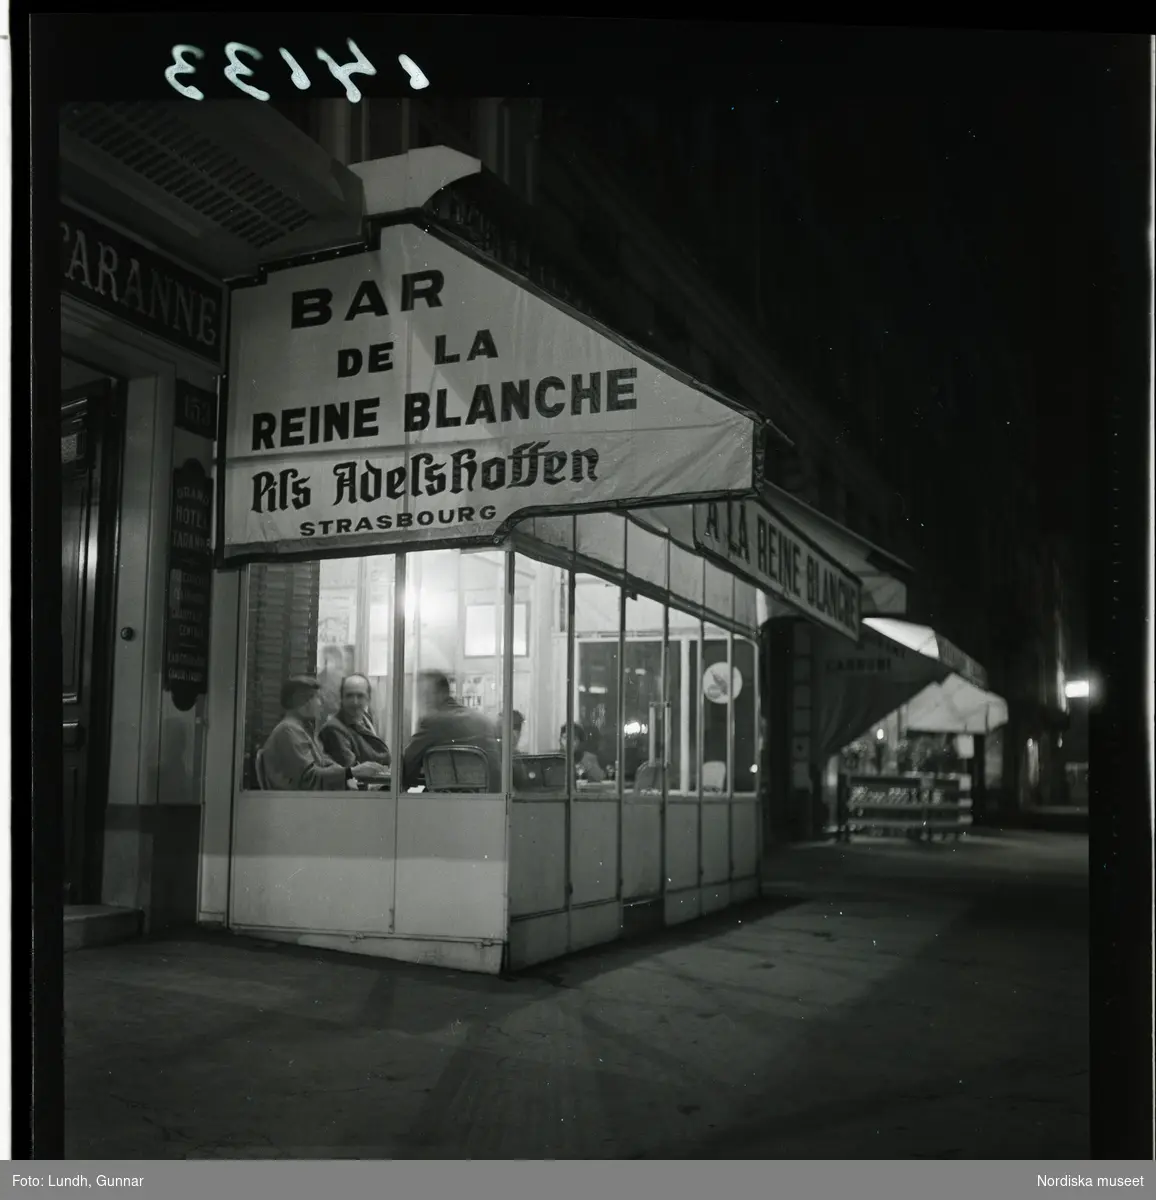 1950. Paris. "Bar de la Reine Blanche" sett från gatan. exteriör kväll.